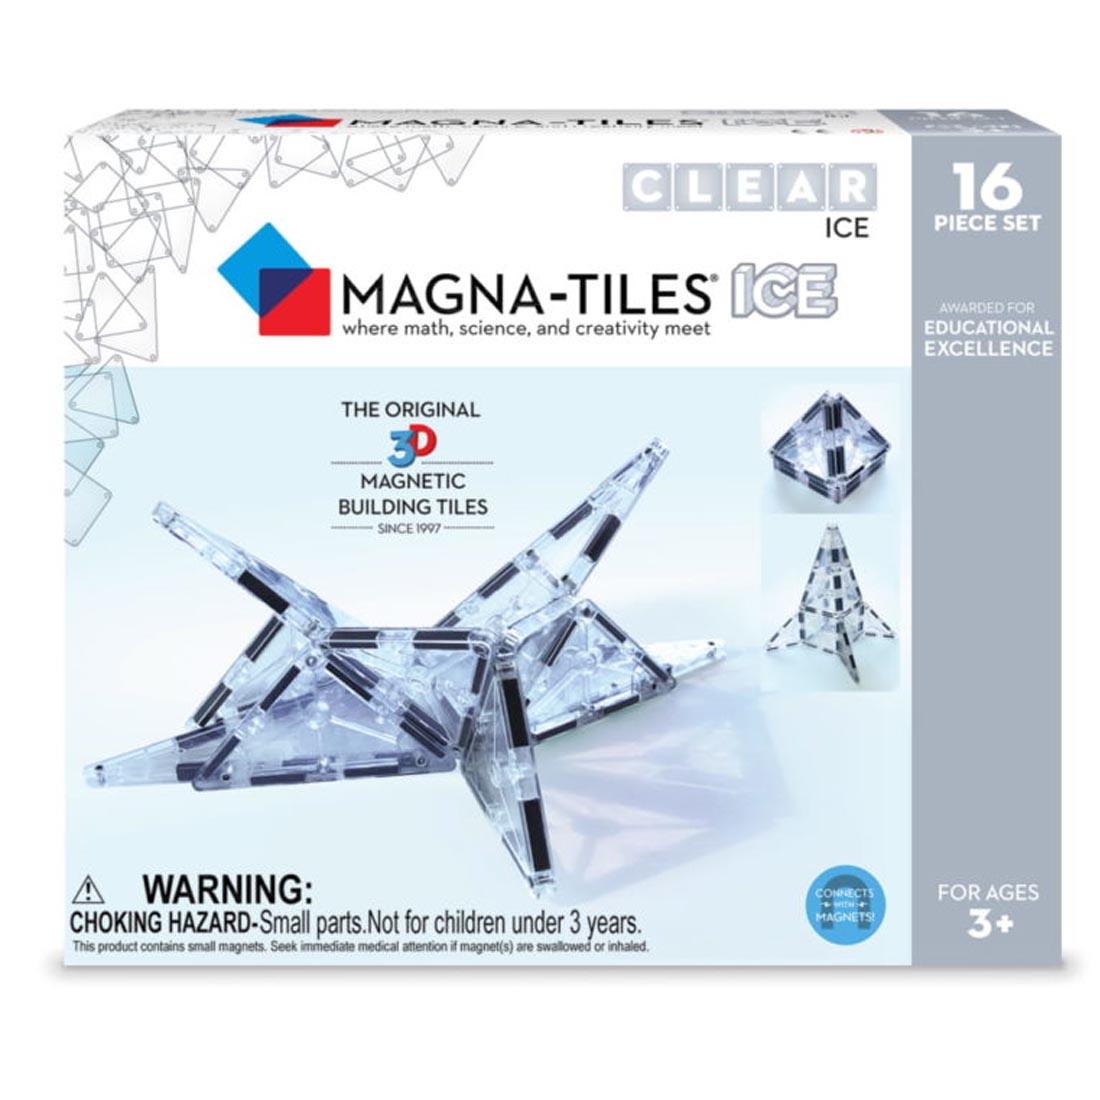 16-Piece Ice Magna-Tiles Set